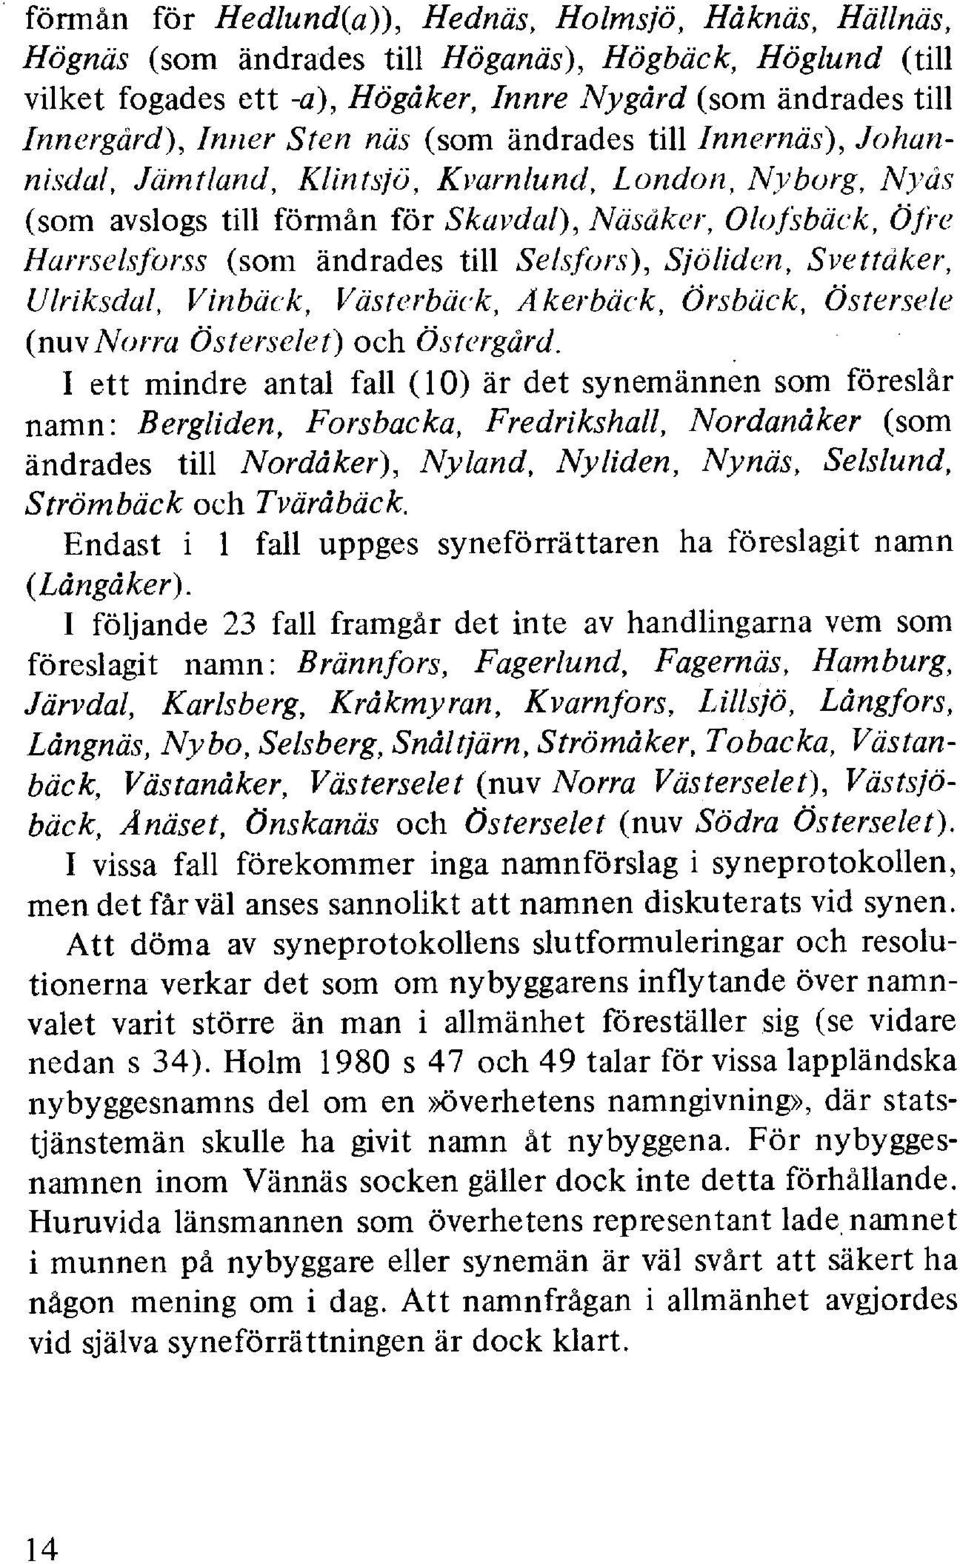 Nyås (som avslogs till förmån för Skavdal), Näsåker, Olofsbäck, öfre Harrselsforss (som ändrades till Selsfors), Sjöliden, Svettåker, Ulriksdal, Vinbäck, Västerbäck, Åkerbäck, Örsbäck, Östersele